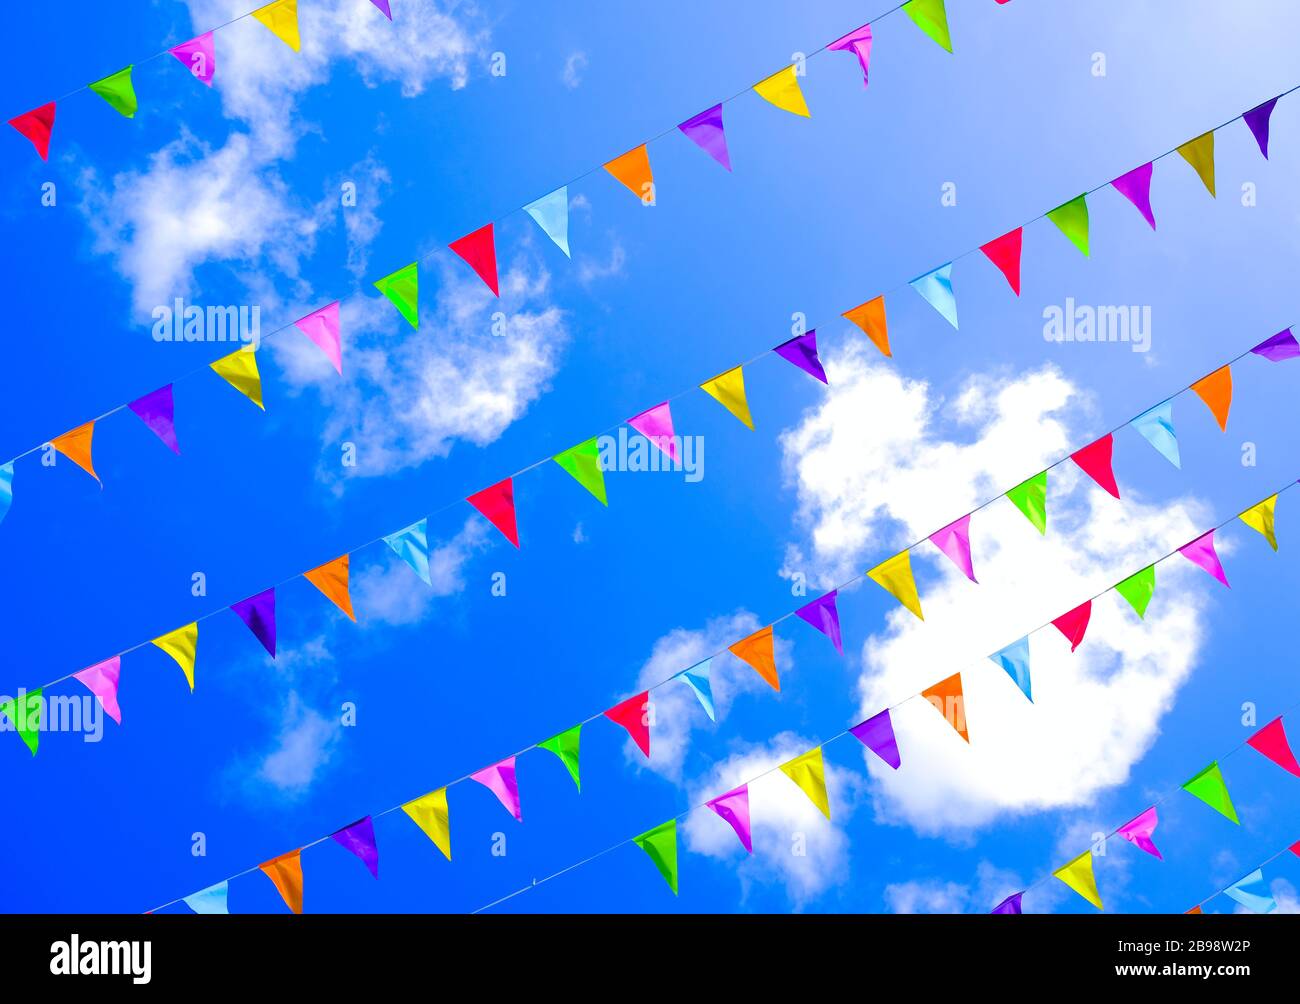 Drapeaux colorés dans le ciel bleu vif avec fond de nuages, festivités d'été, couleurs de l'arc-en-ciel. Banque D'Images